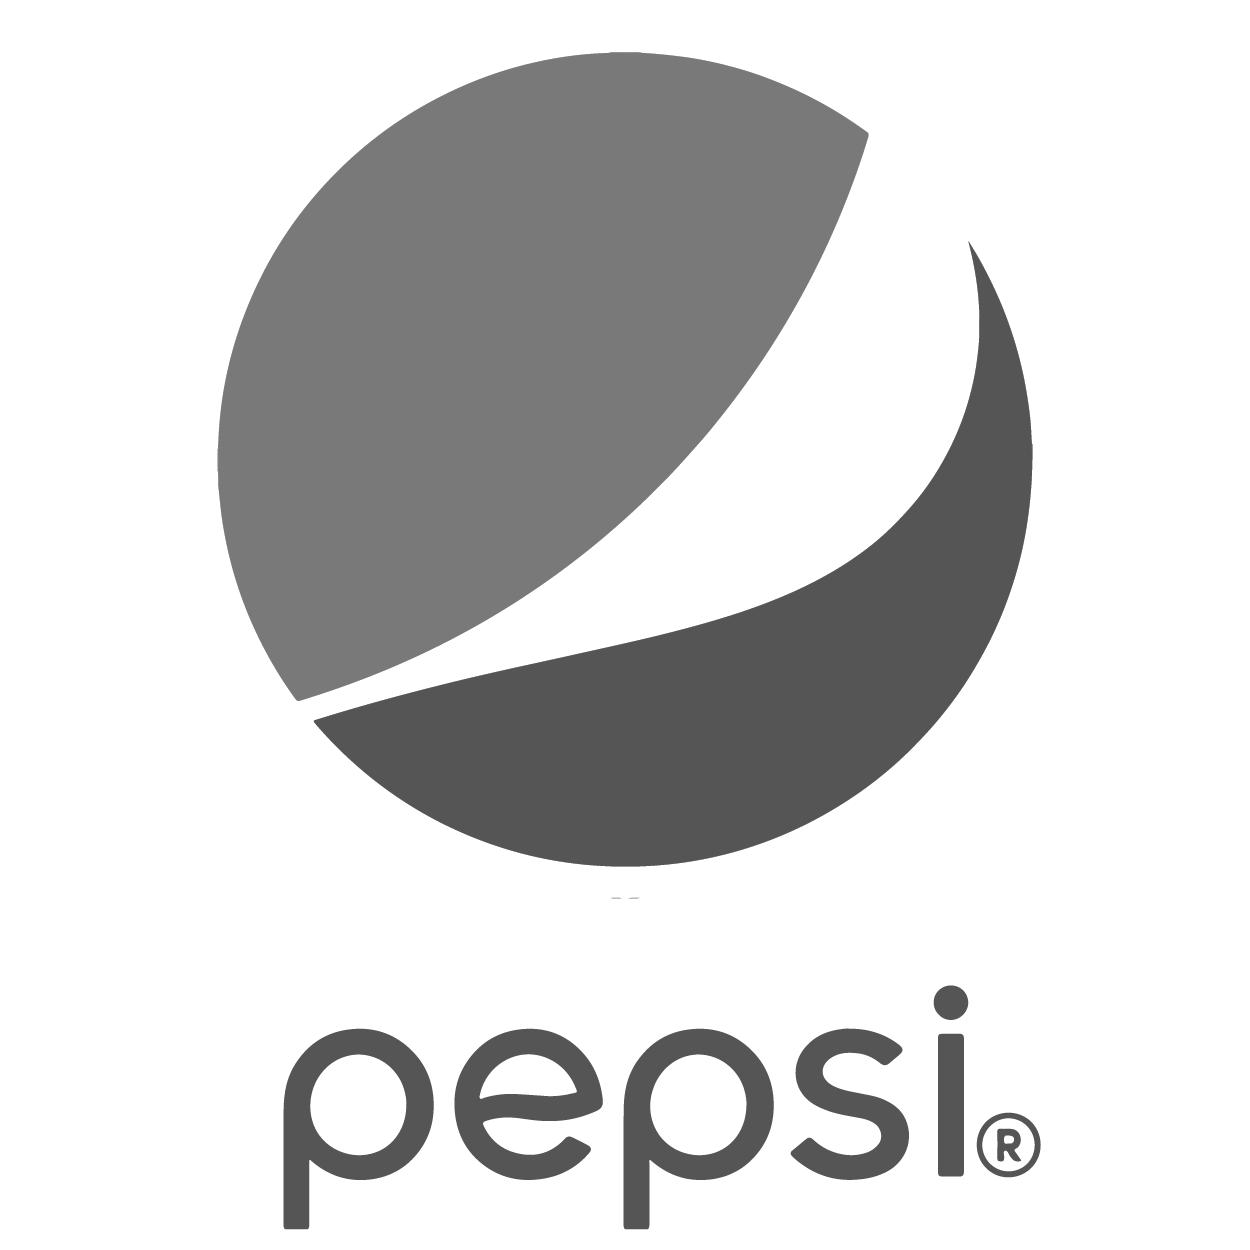 Pepsi.png